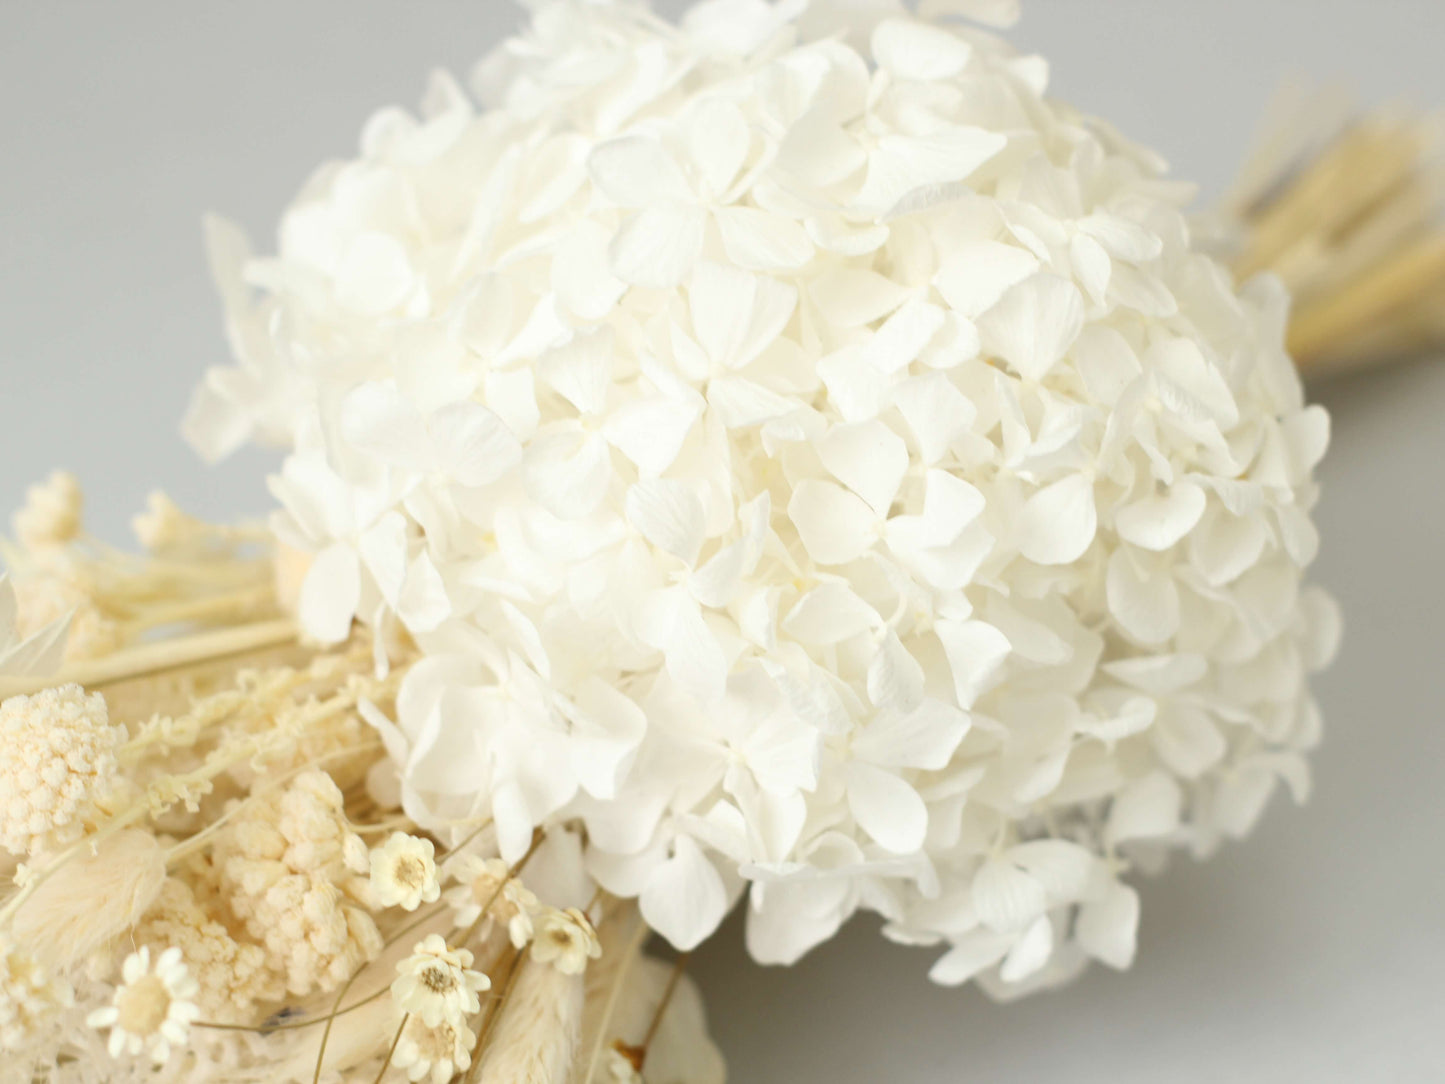 Buchet nude stabilizat cu hortensie albă, lagurus, ruscus și alte flori delicate rezistente,